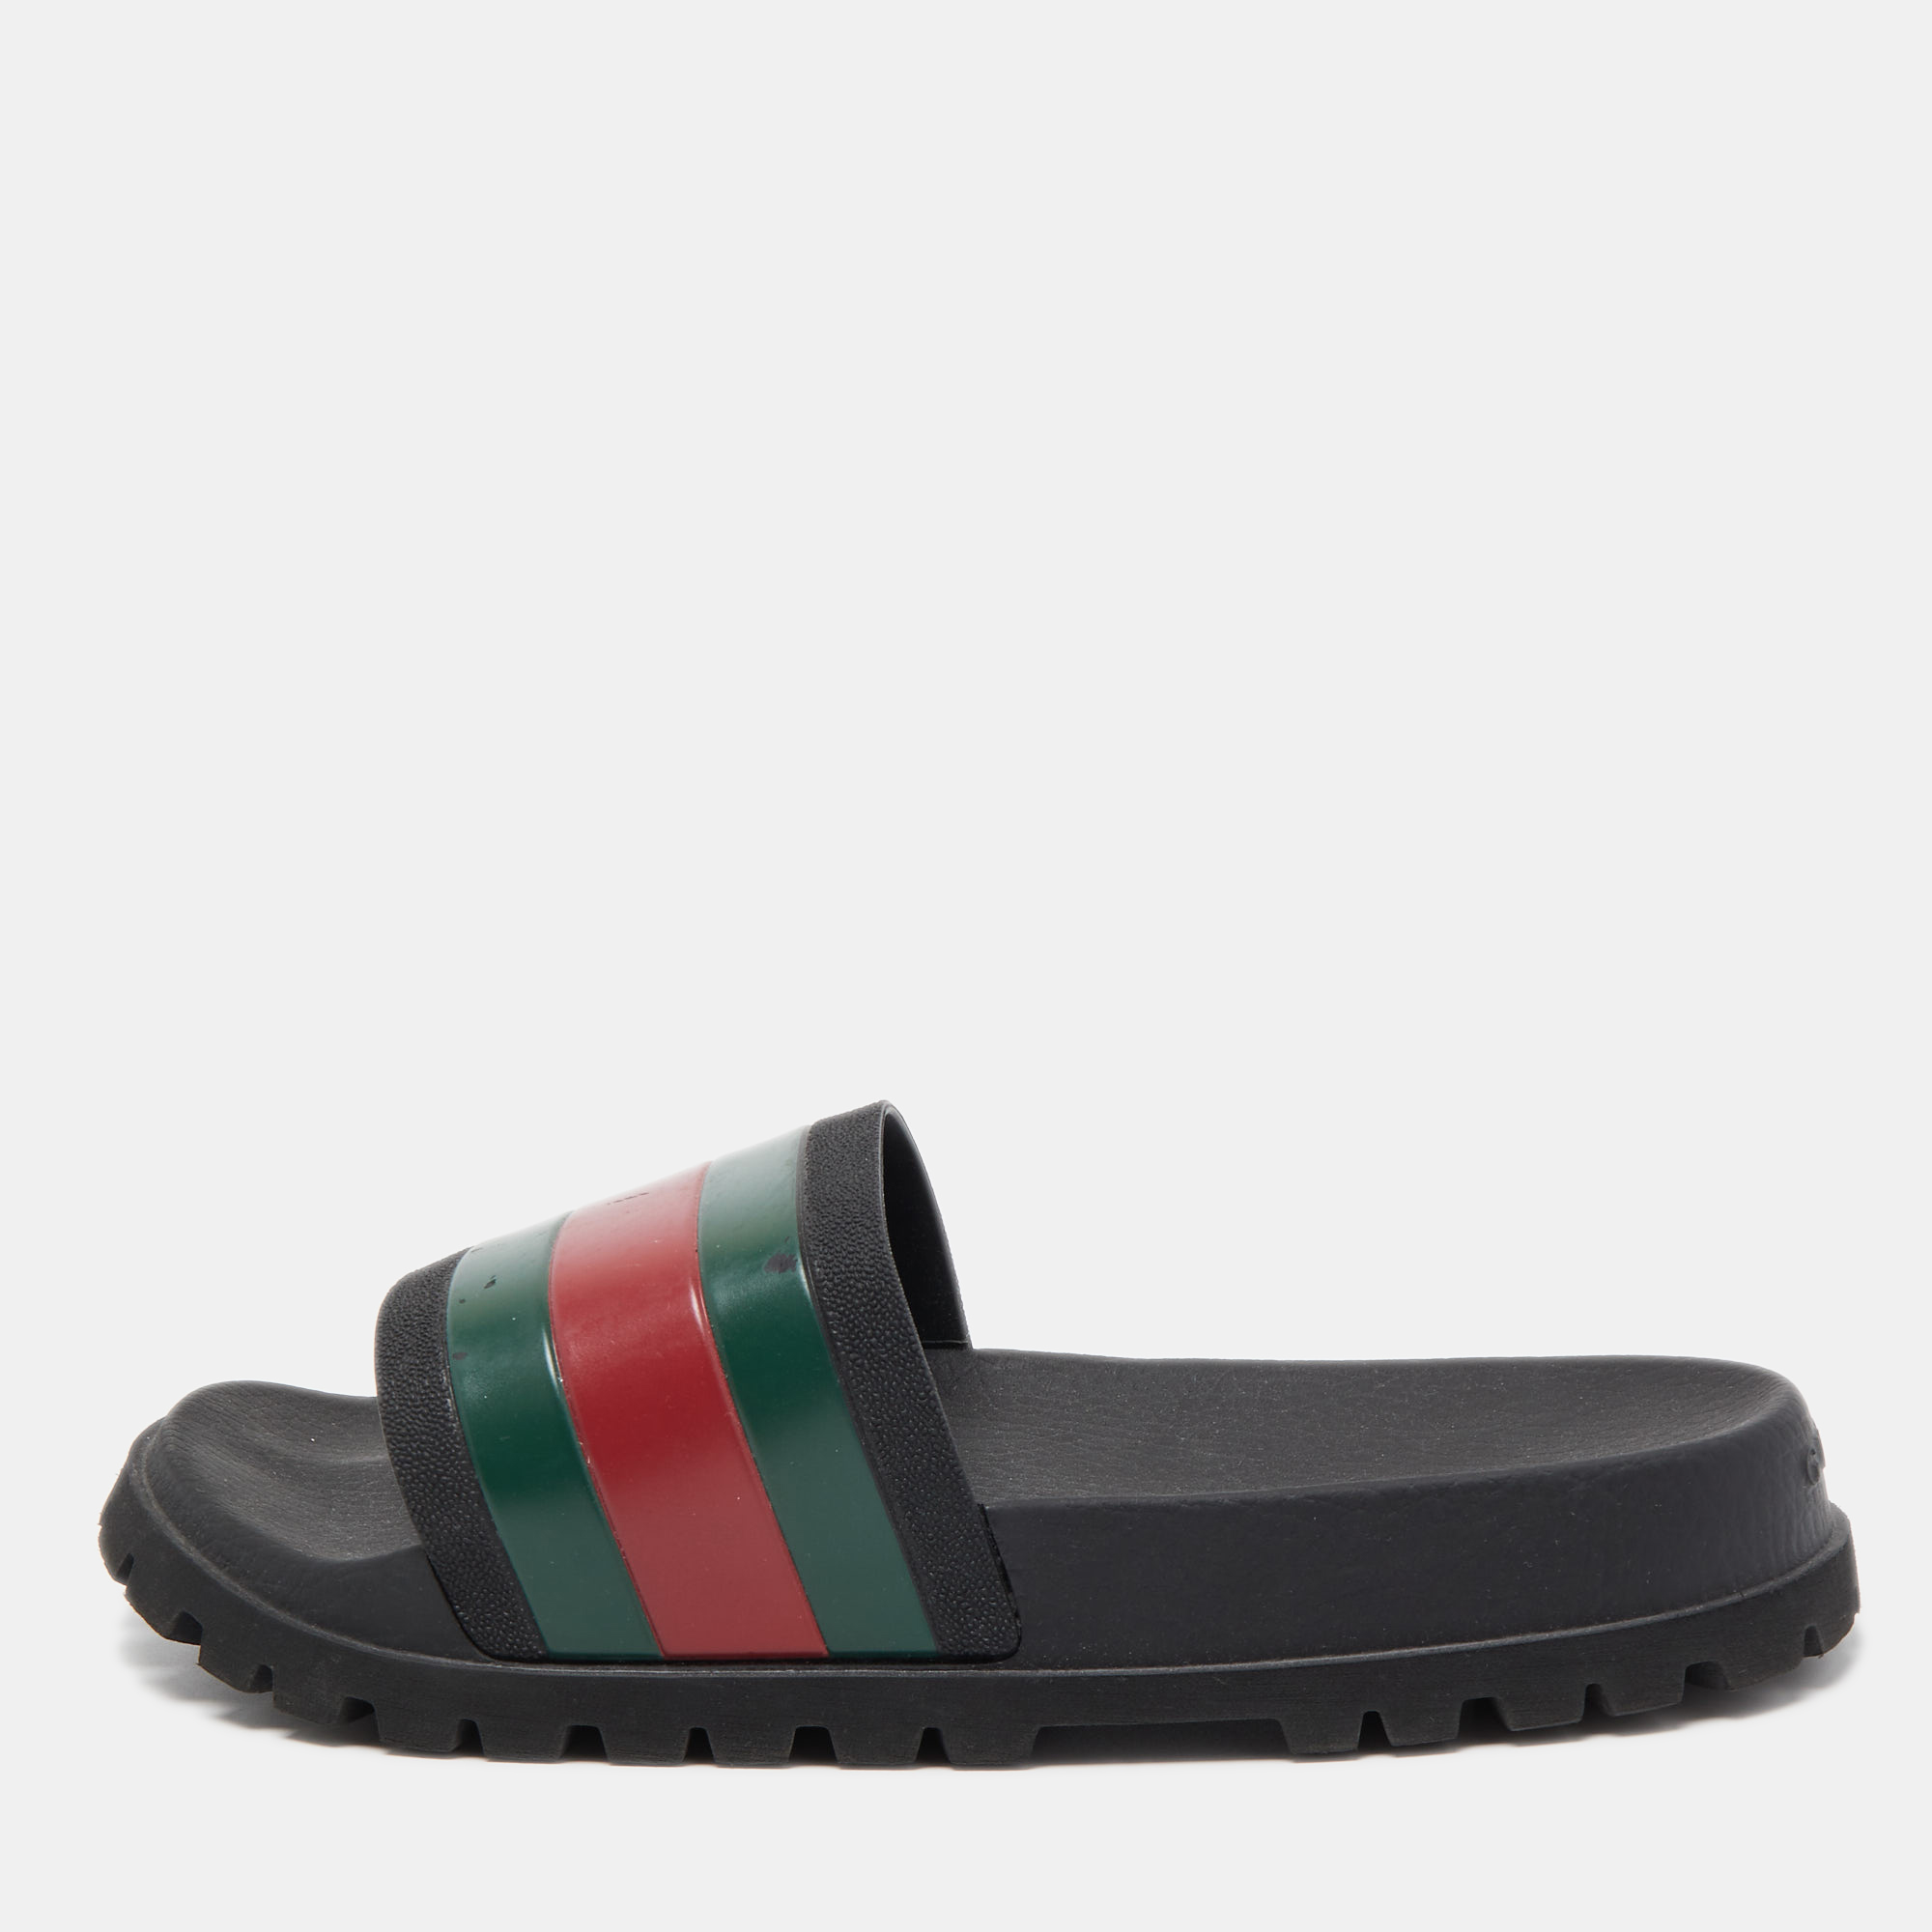 Gucci black rubber web detail slide sandals size 40